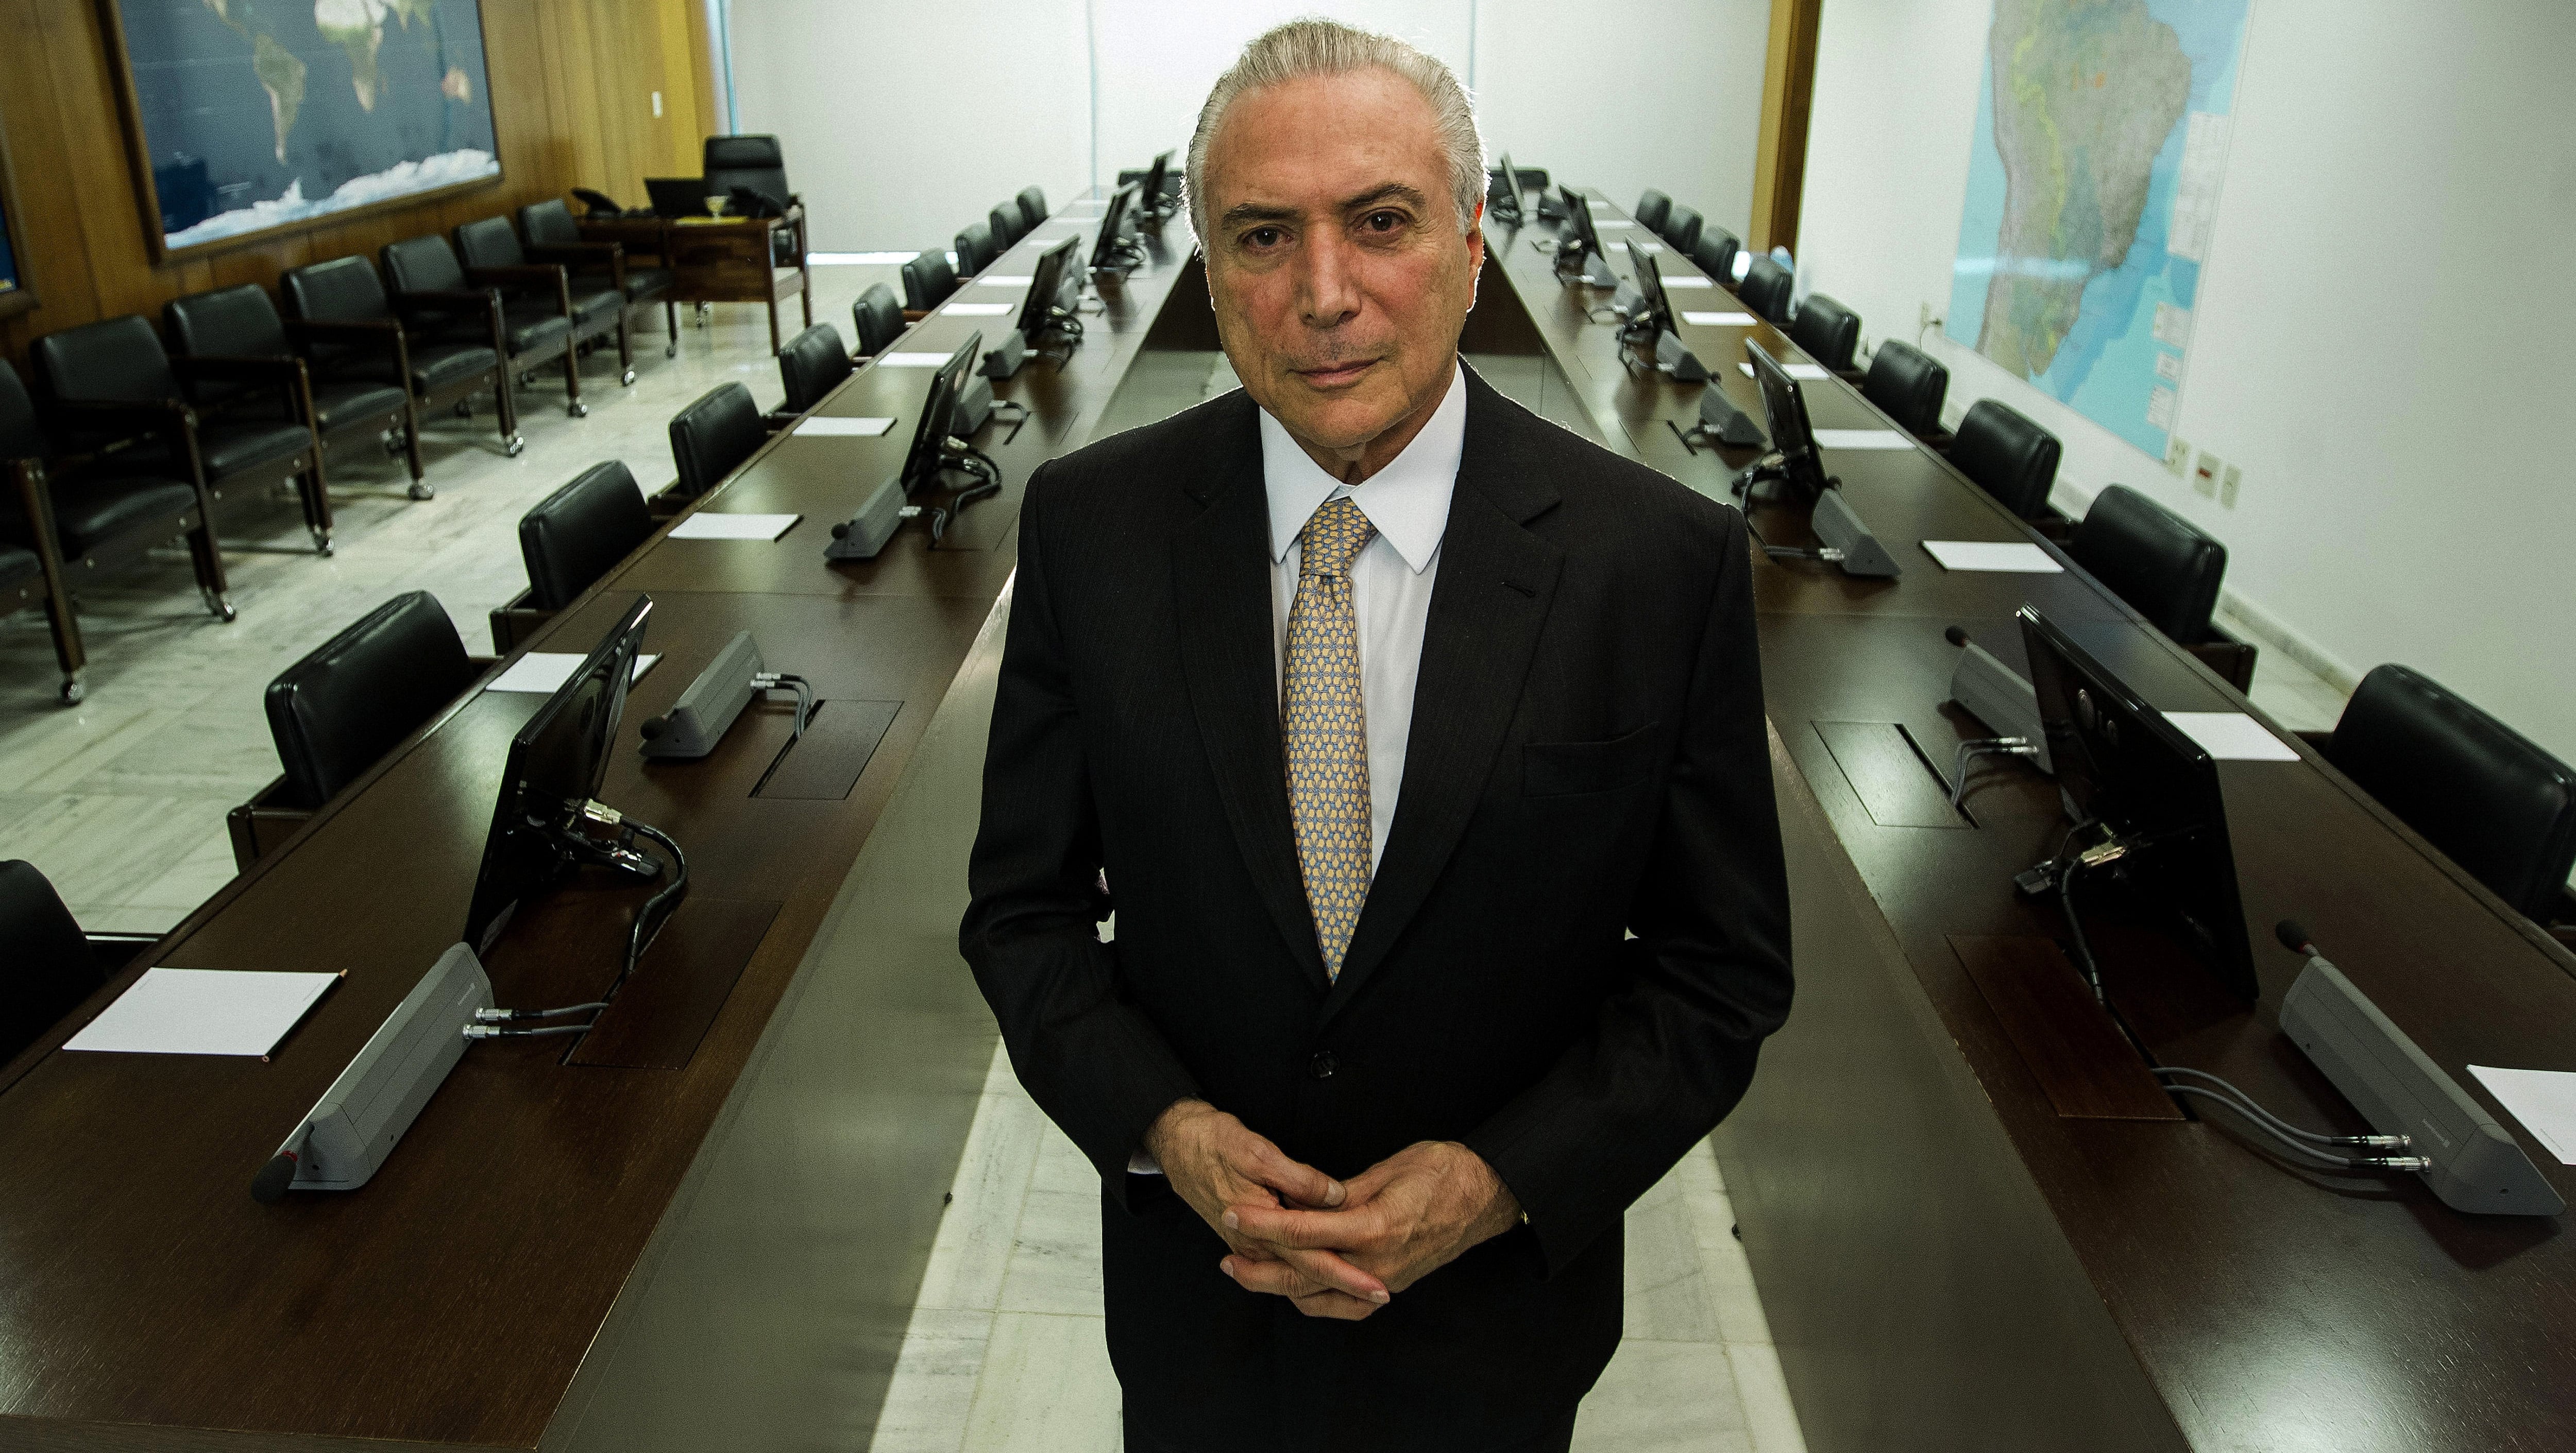 El presidente de facto, Michel Temer, ya ha sido denunciado en dos ocasiones en 2017 por la Fiscalía de Brasil ante presuntos hechos de corrupción.